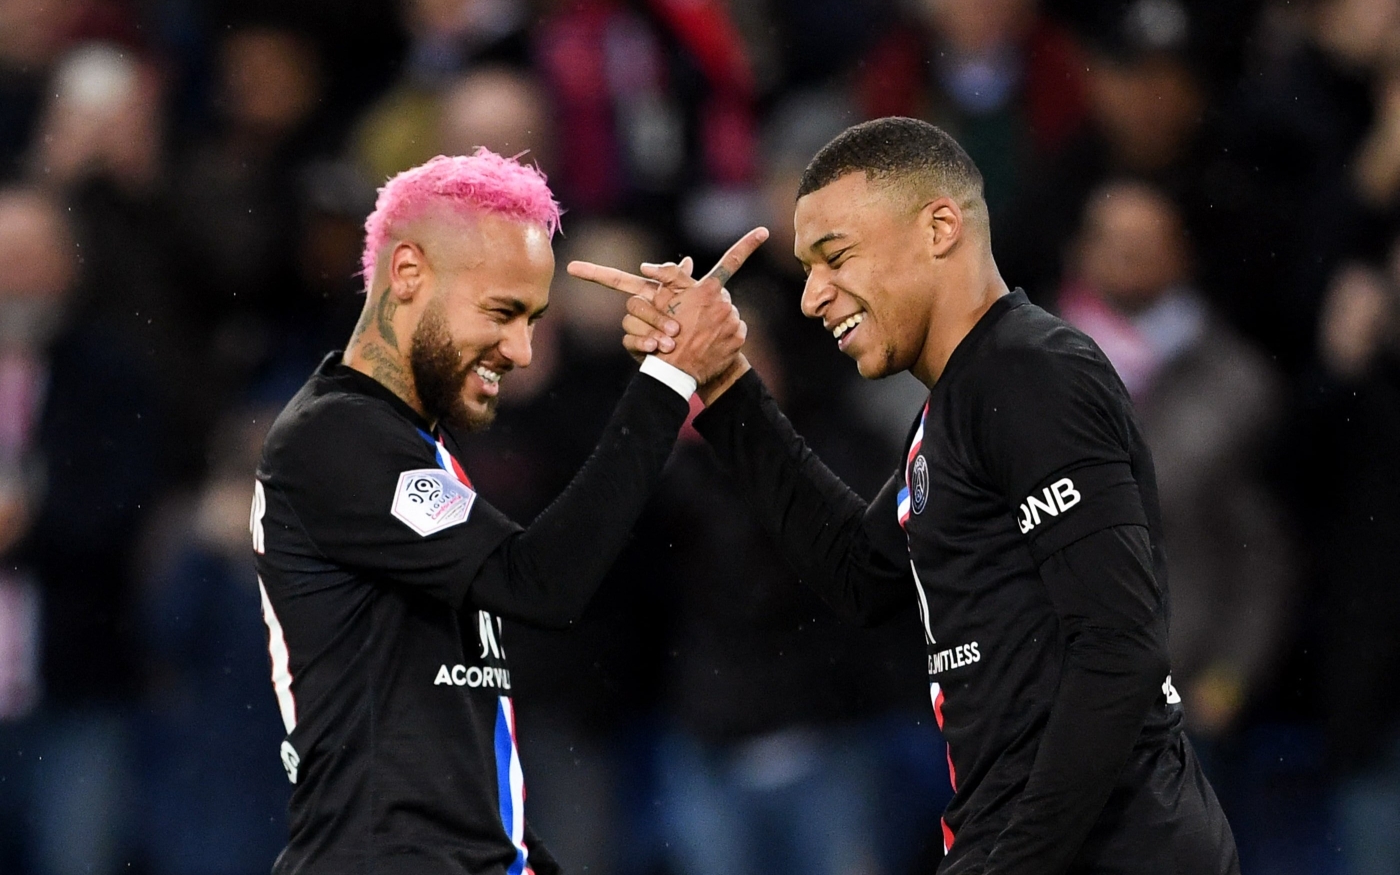 Le Paris-Saint-Germain a recruté les superstars Neymar et Kylian Mbappé pour près de 400 millions d’euros à l’été 2017 (AFP)